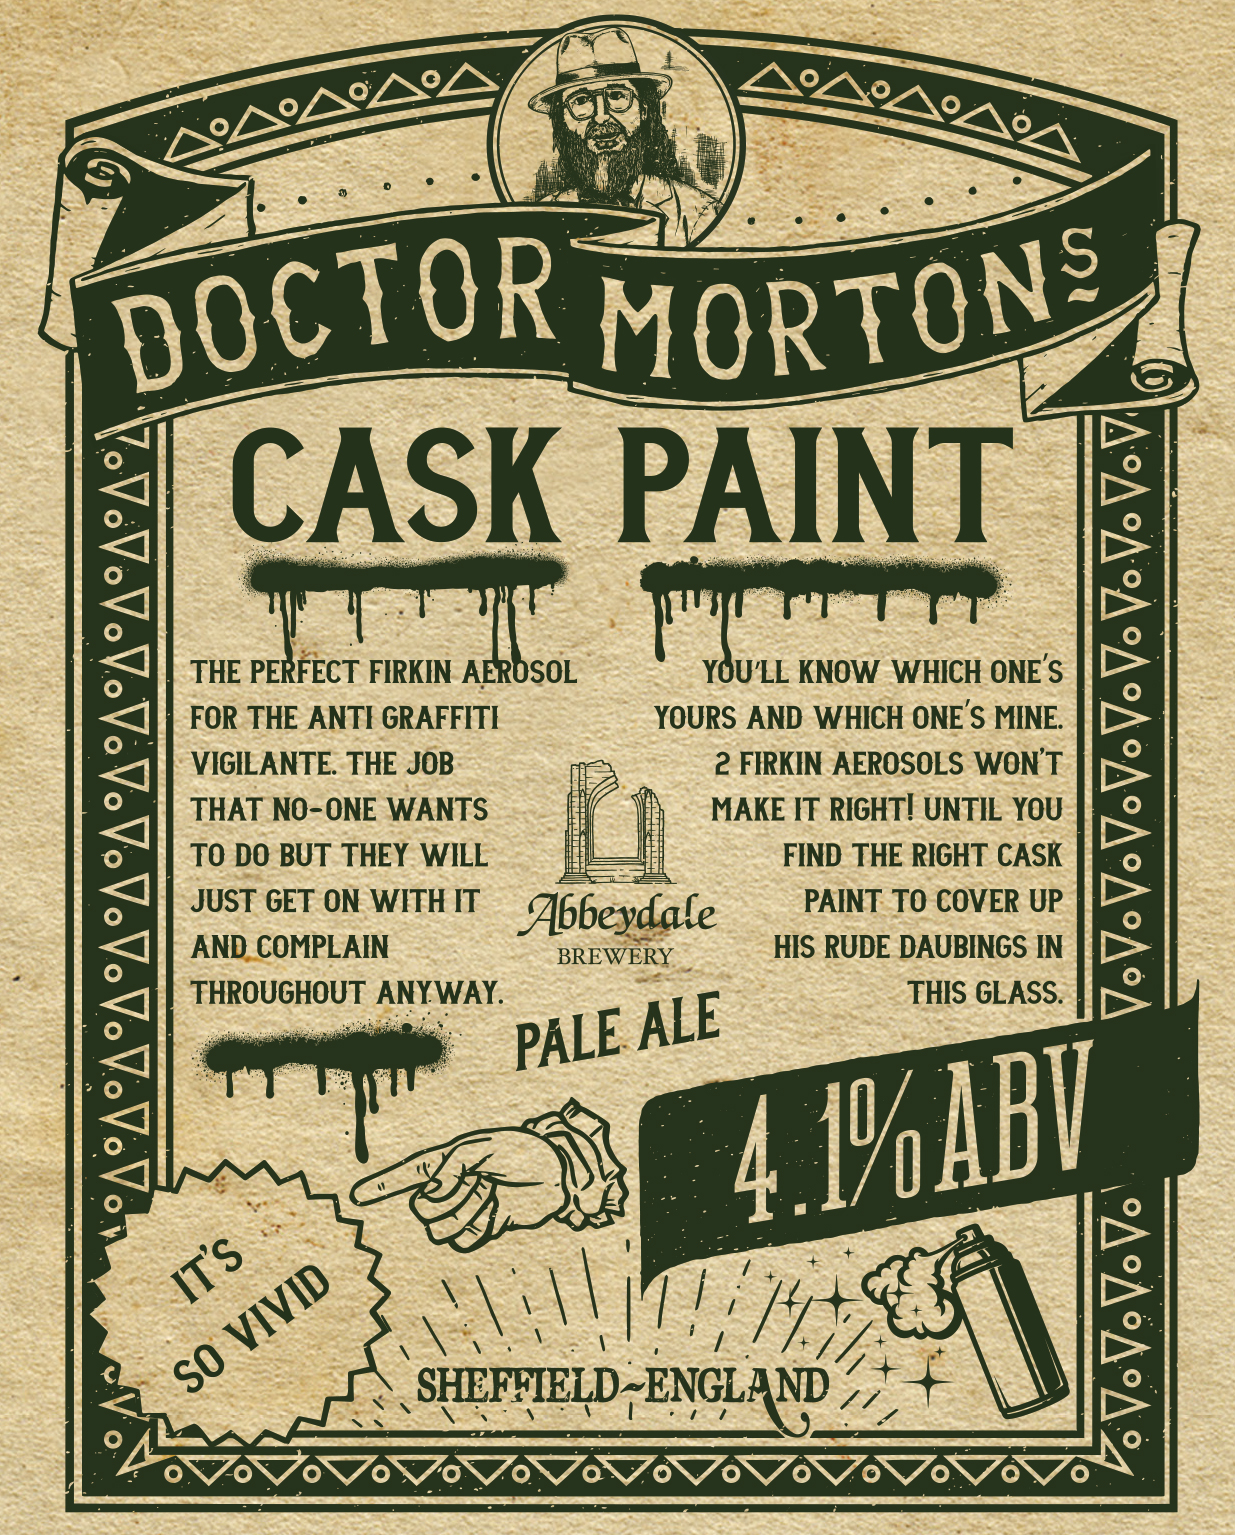 Dr Morton’s Cask Paint %